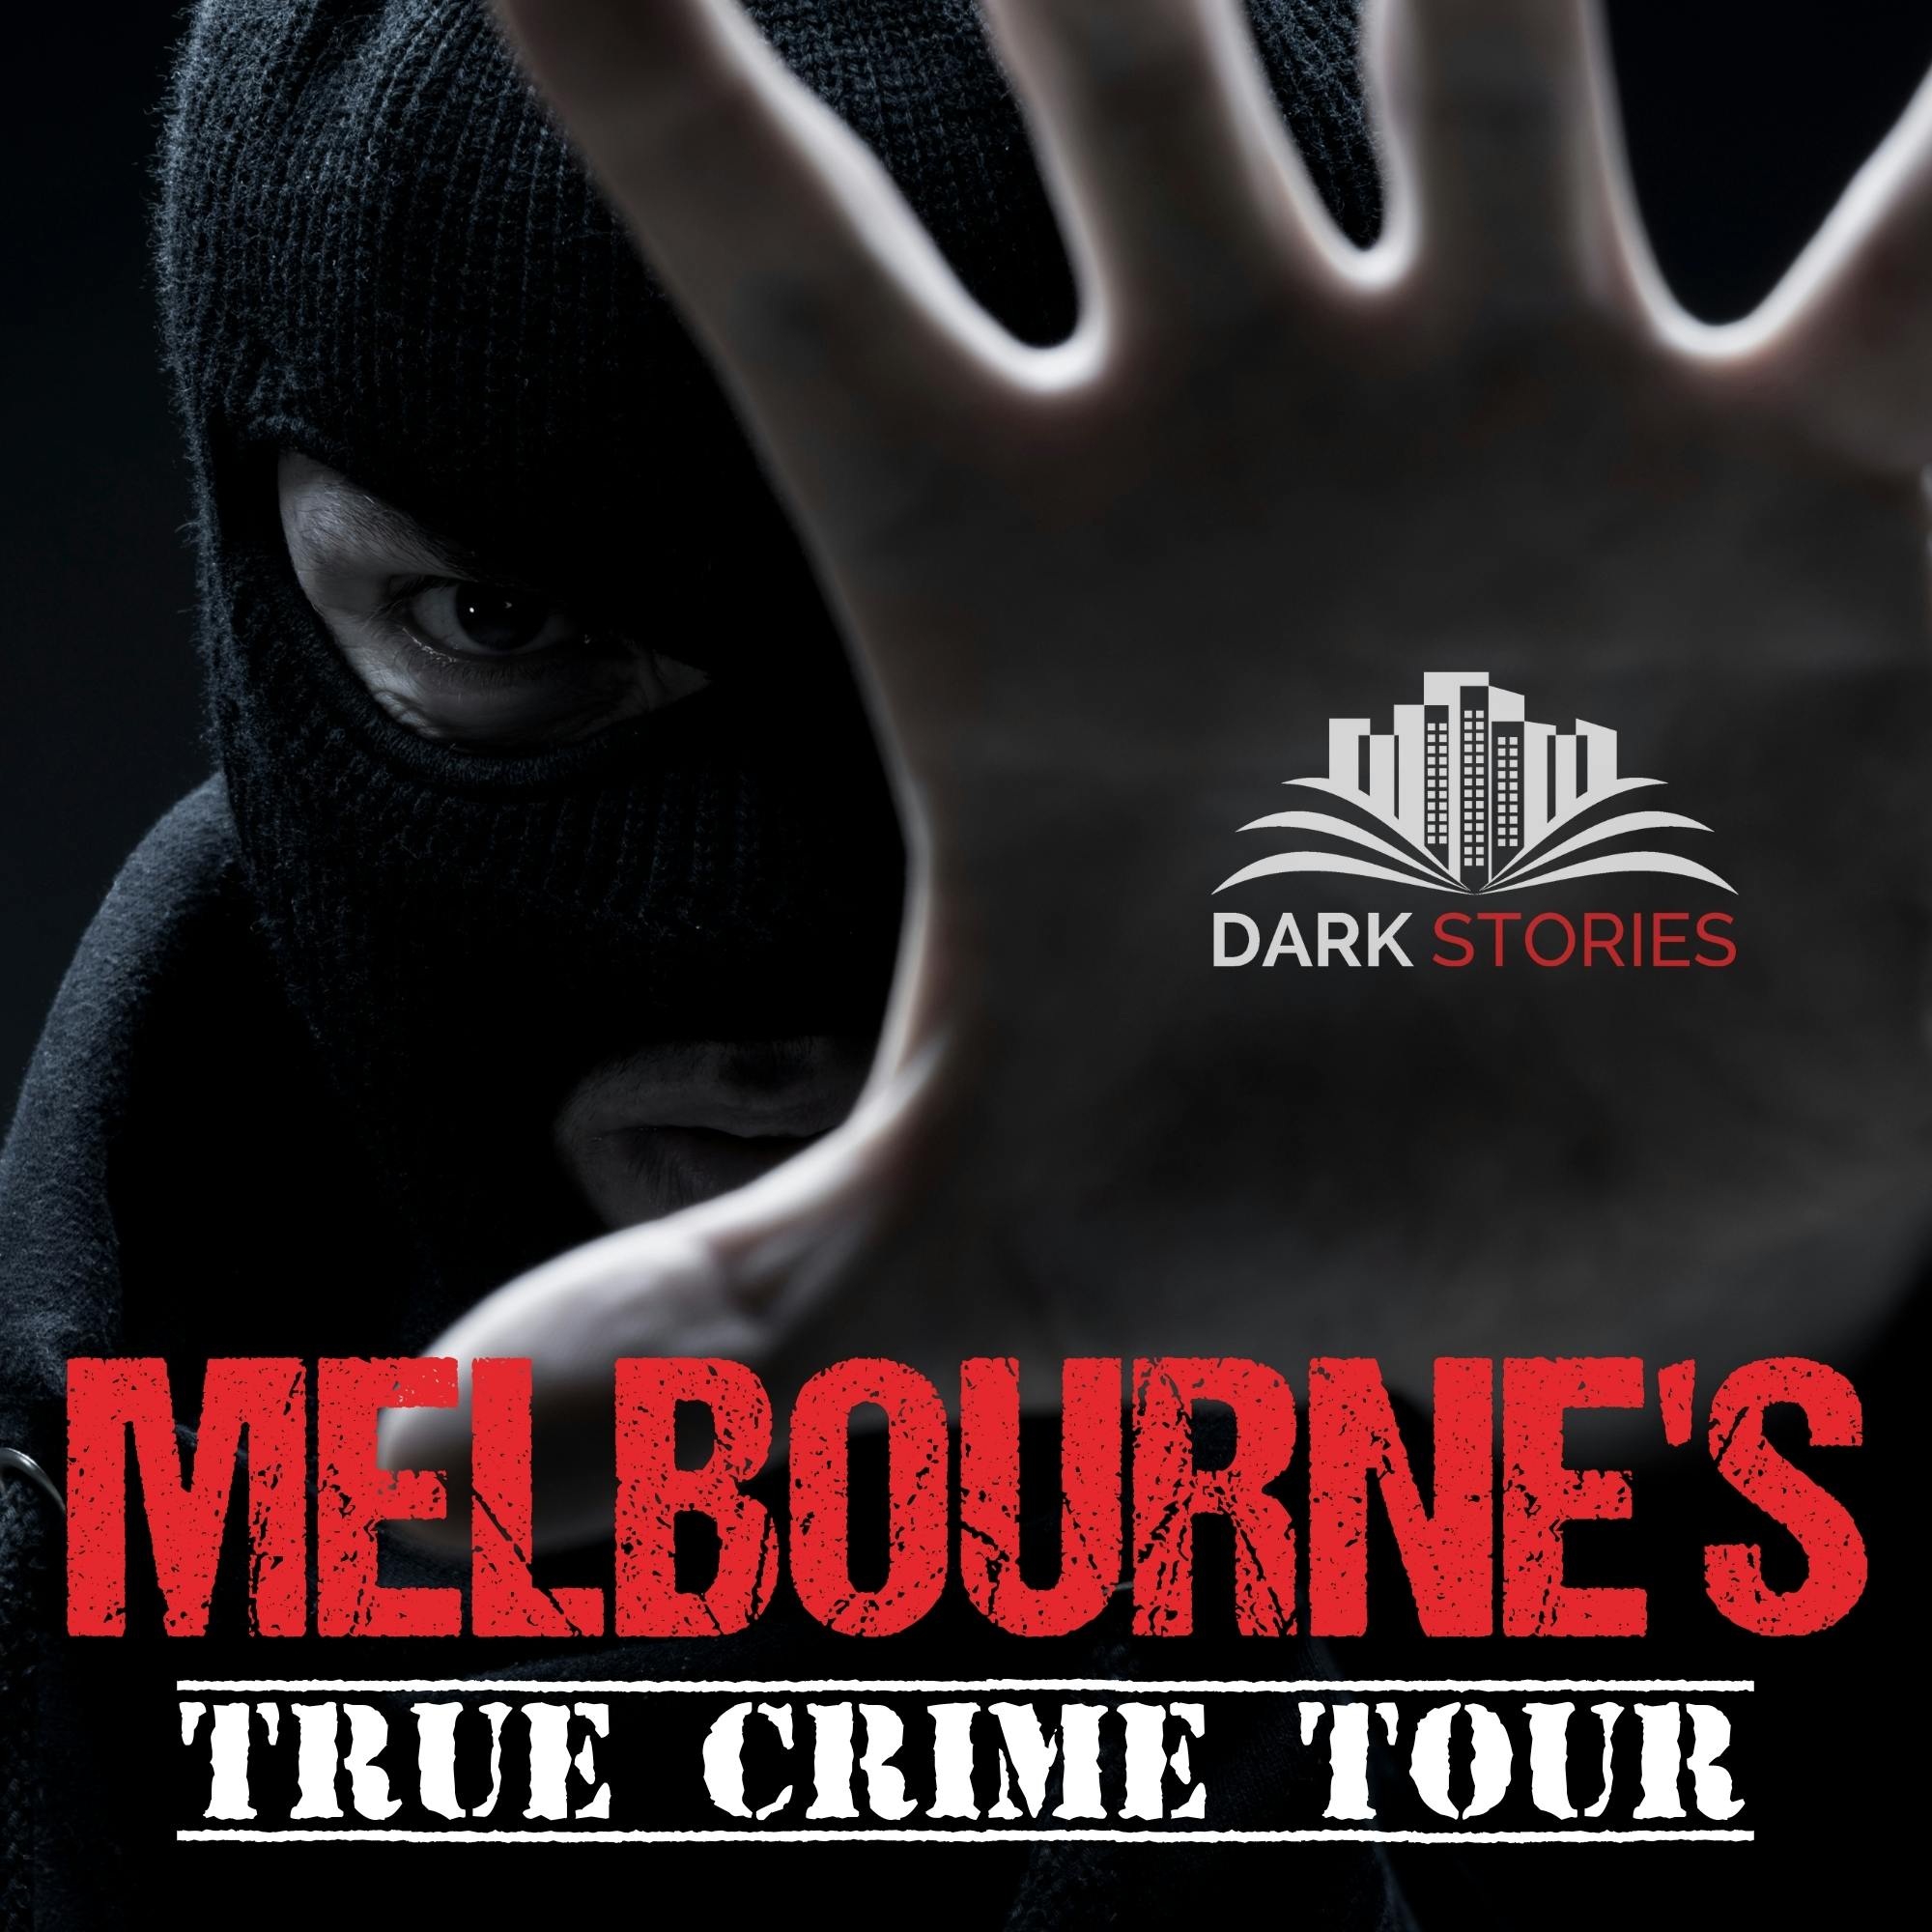 Melbournes Führung mit wahren Kriminalgeschichten